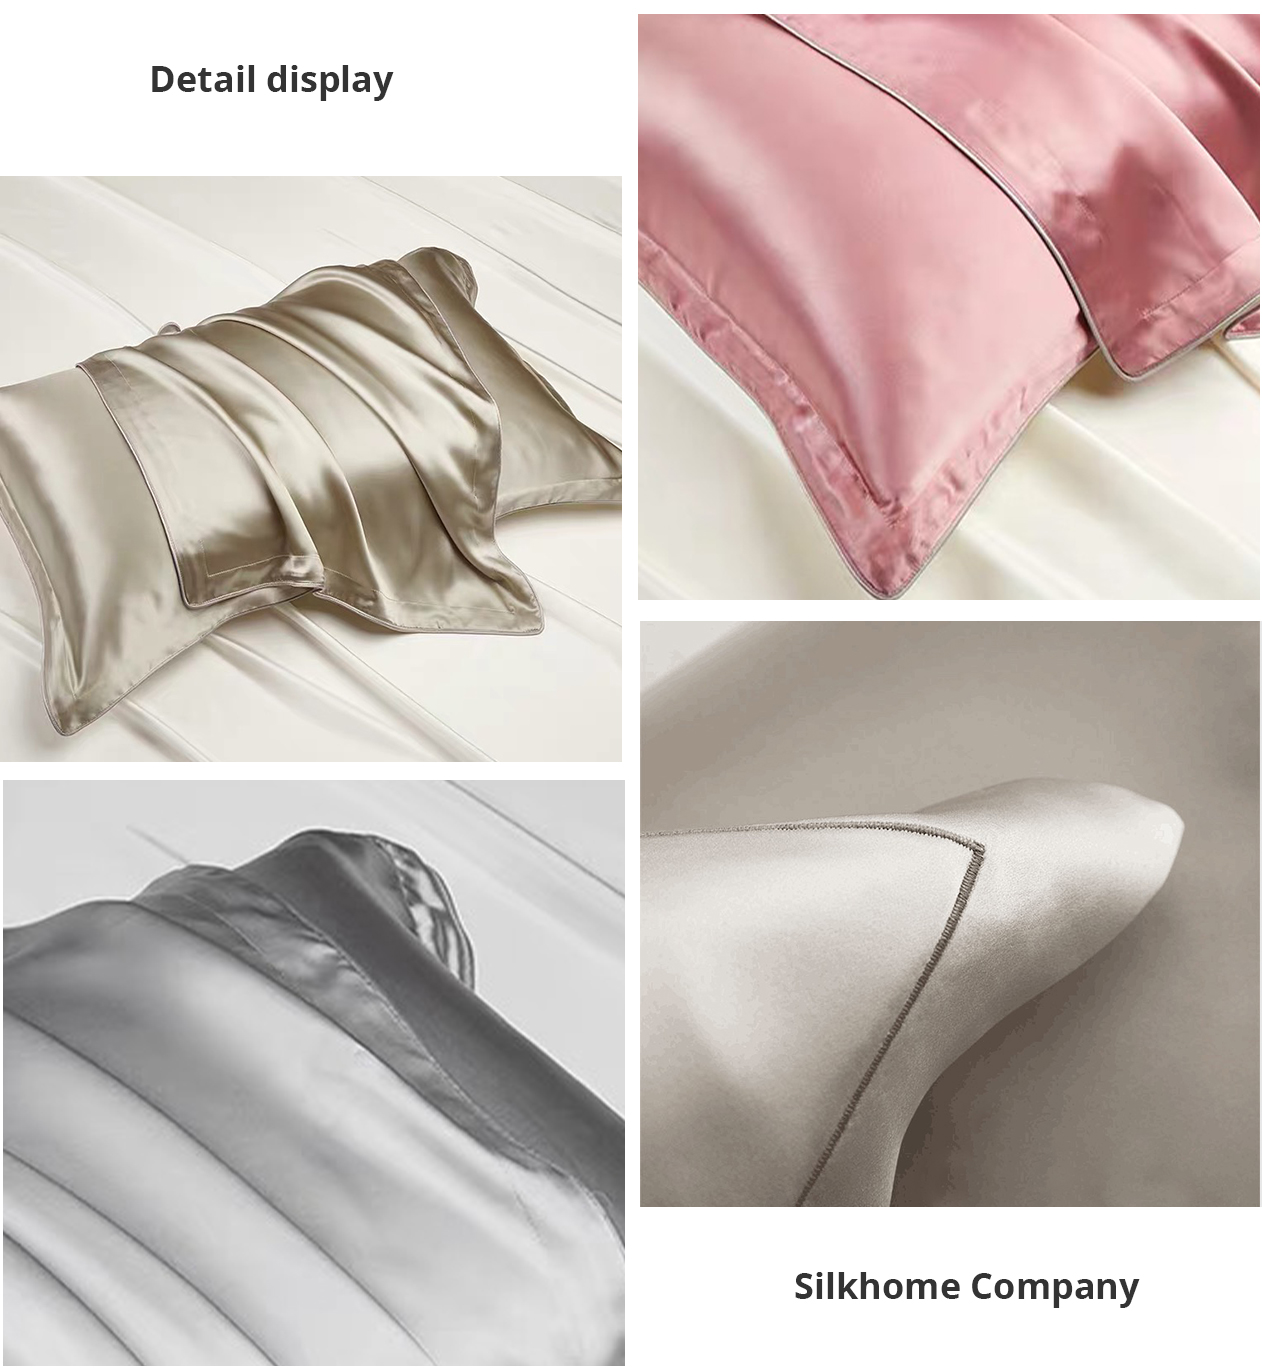 China Home Silk Pillowcase supplier